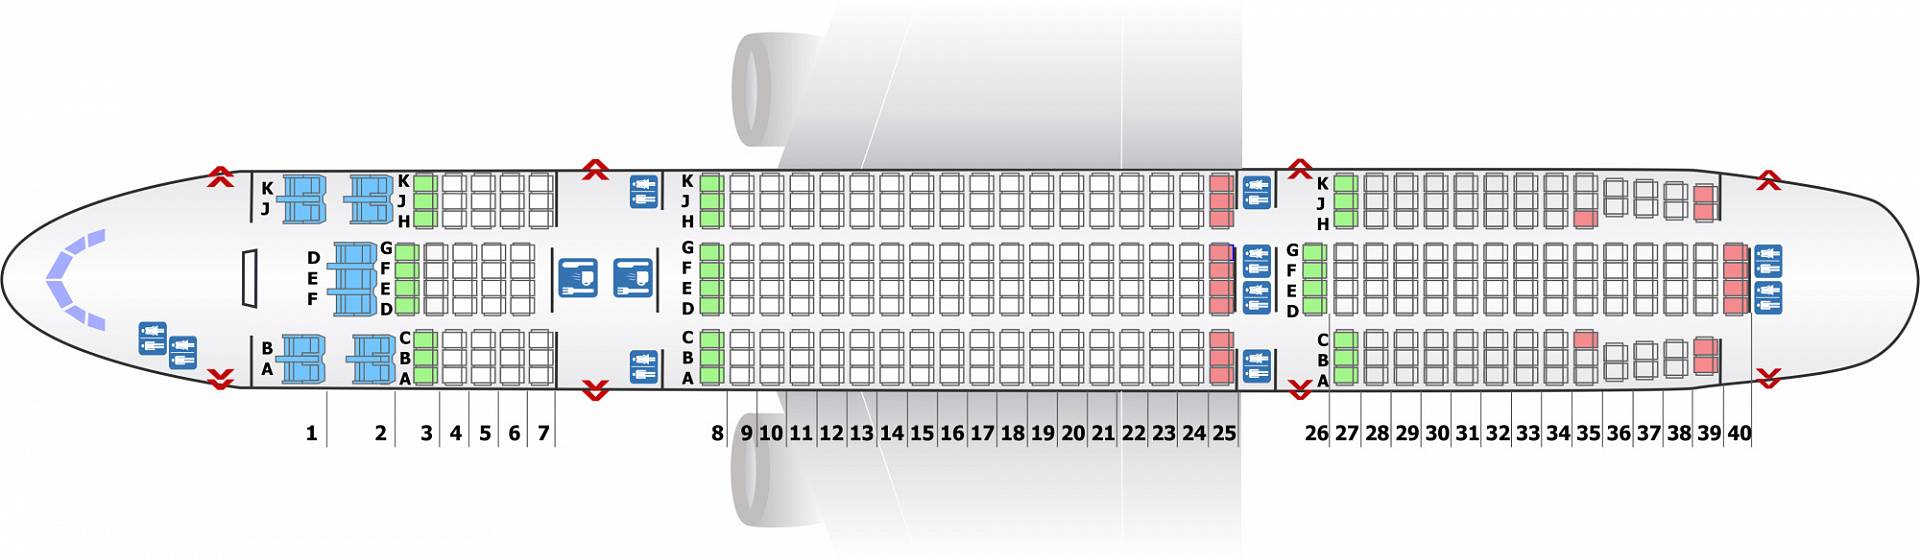 Самолет Boeing 777-200 схема салона